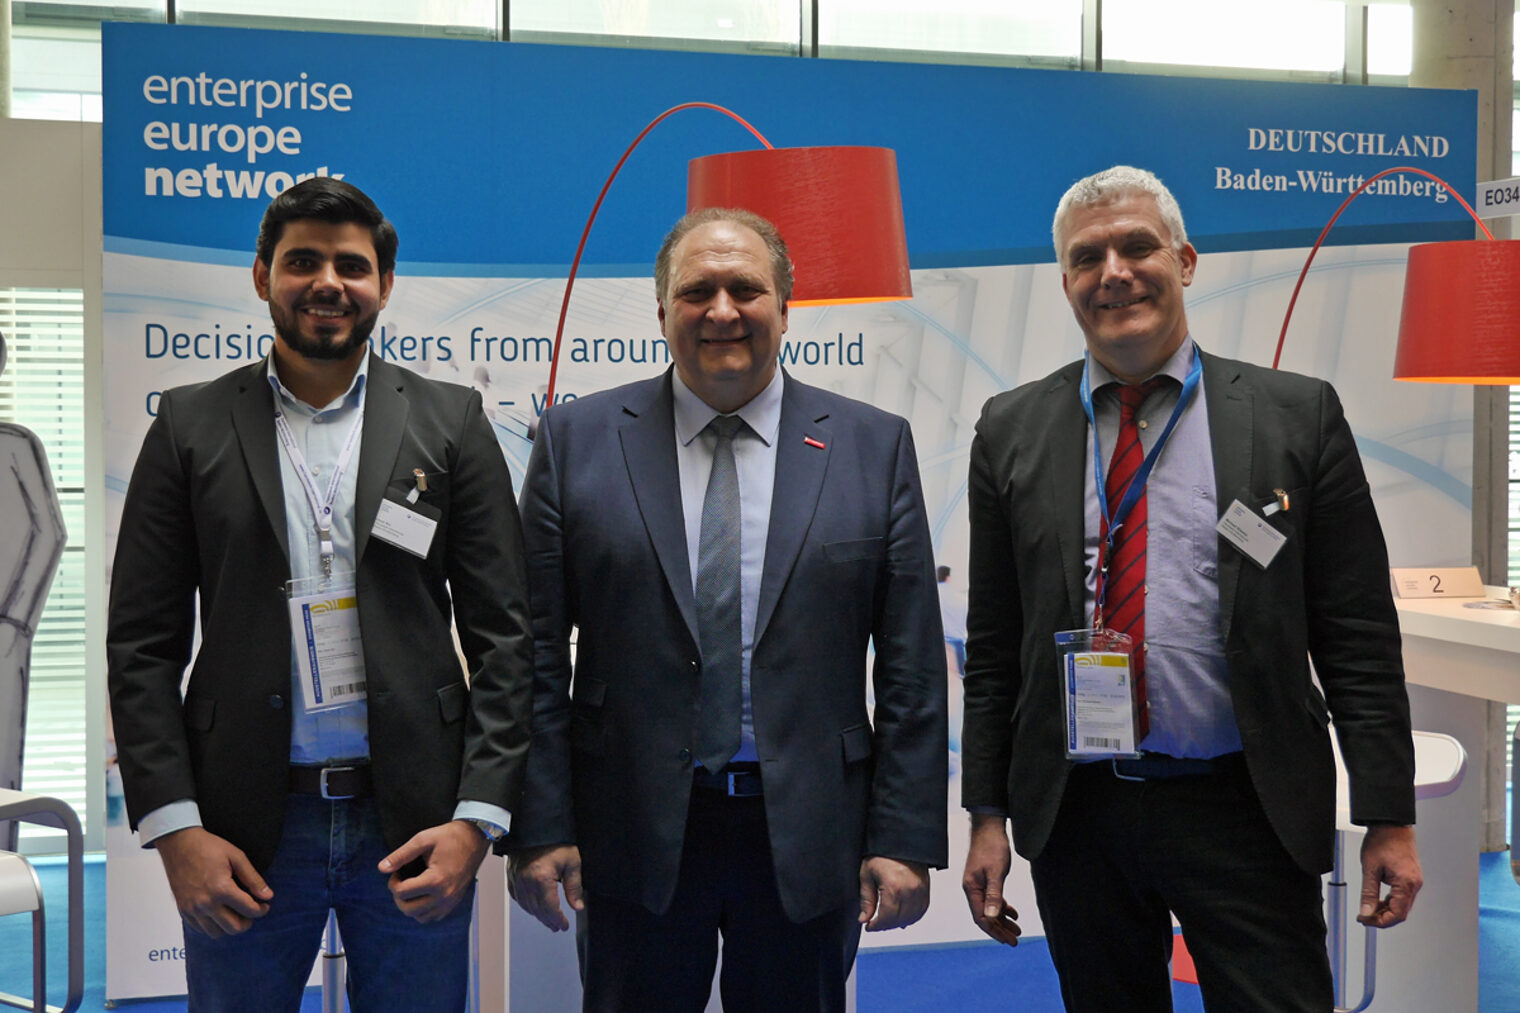 Der Präsident des ZDH, Hans Peter Wollseifer, besucht den Stand des Enterprise Europe Network auf der R+t 2018 in Stuttgart.